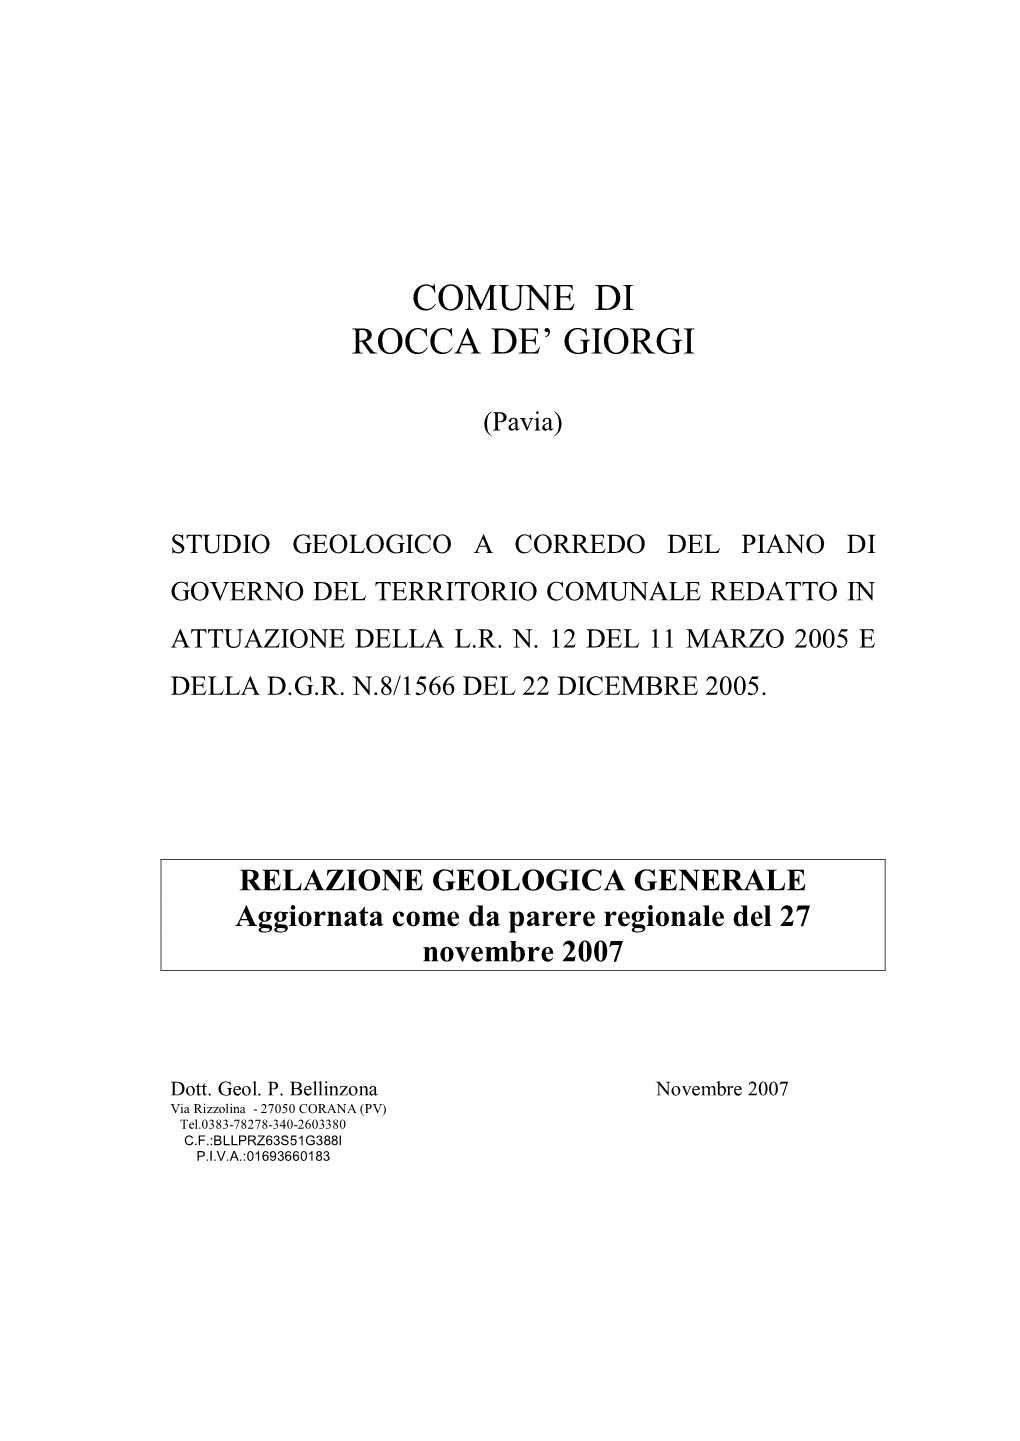 RELAZIONE GEOLOGICA GENERALE Aggiornata Come Da Parere Regionale Del 27 Novembre 2007